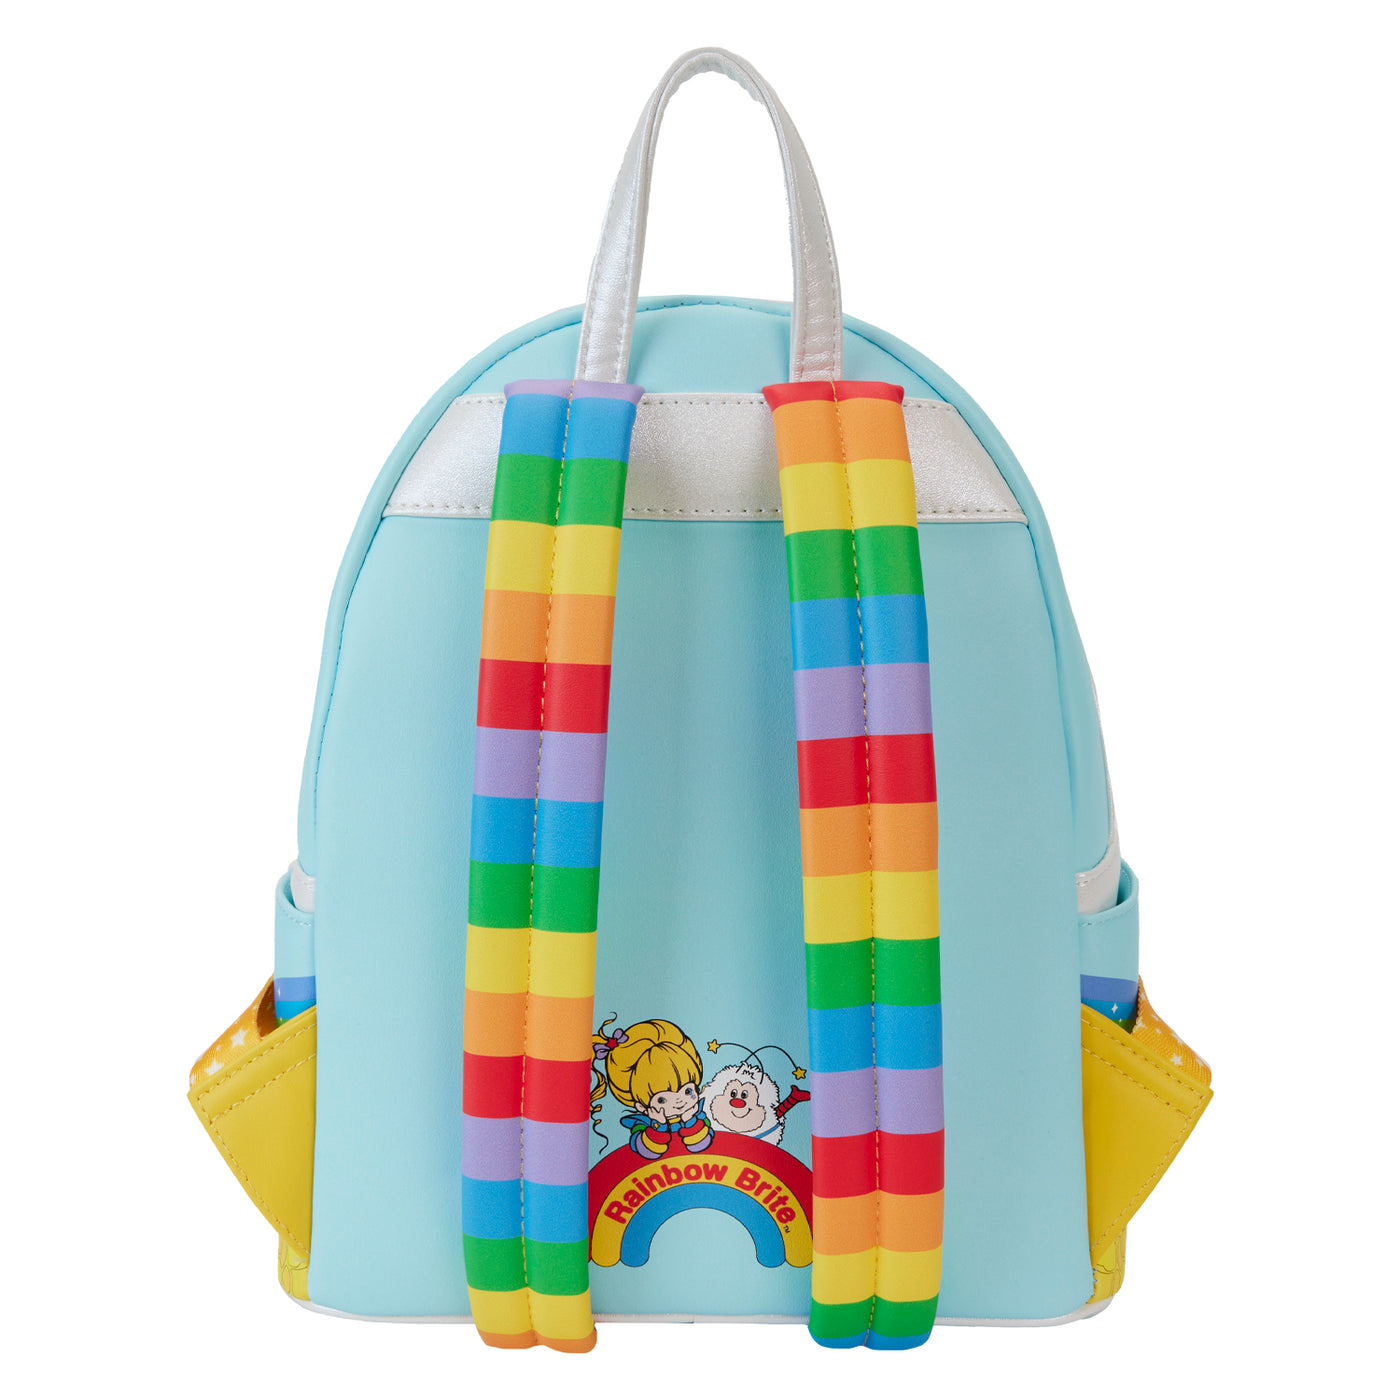 Hallmark Rainbow Brite Castle Group Mini Backpack